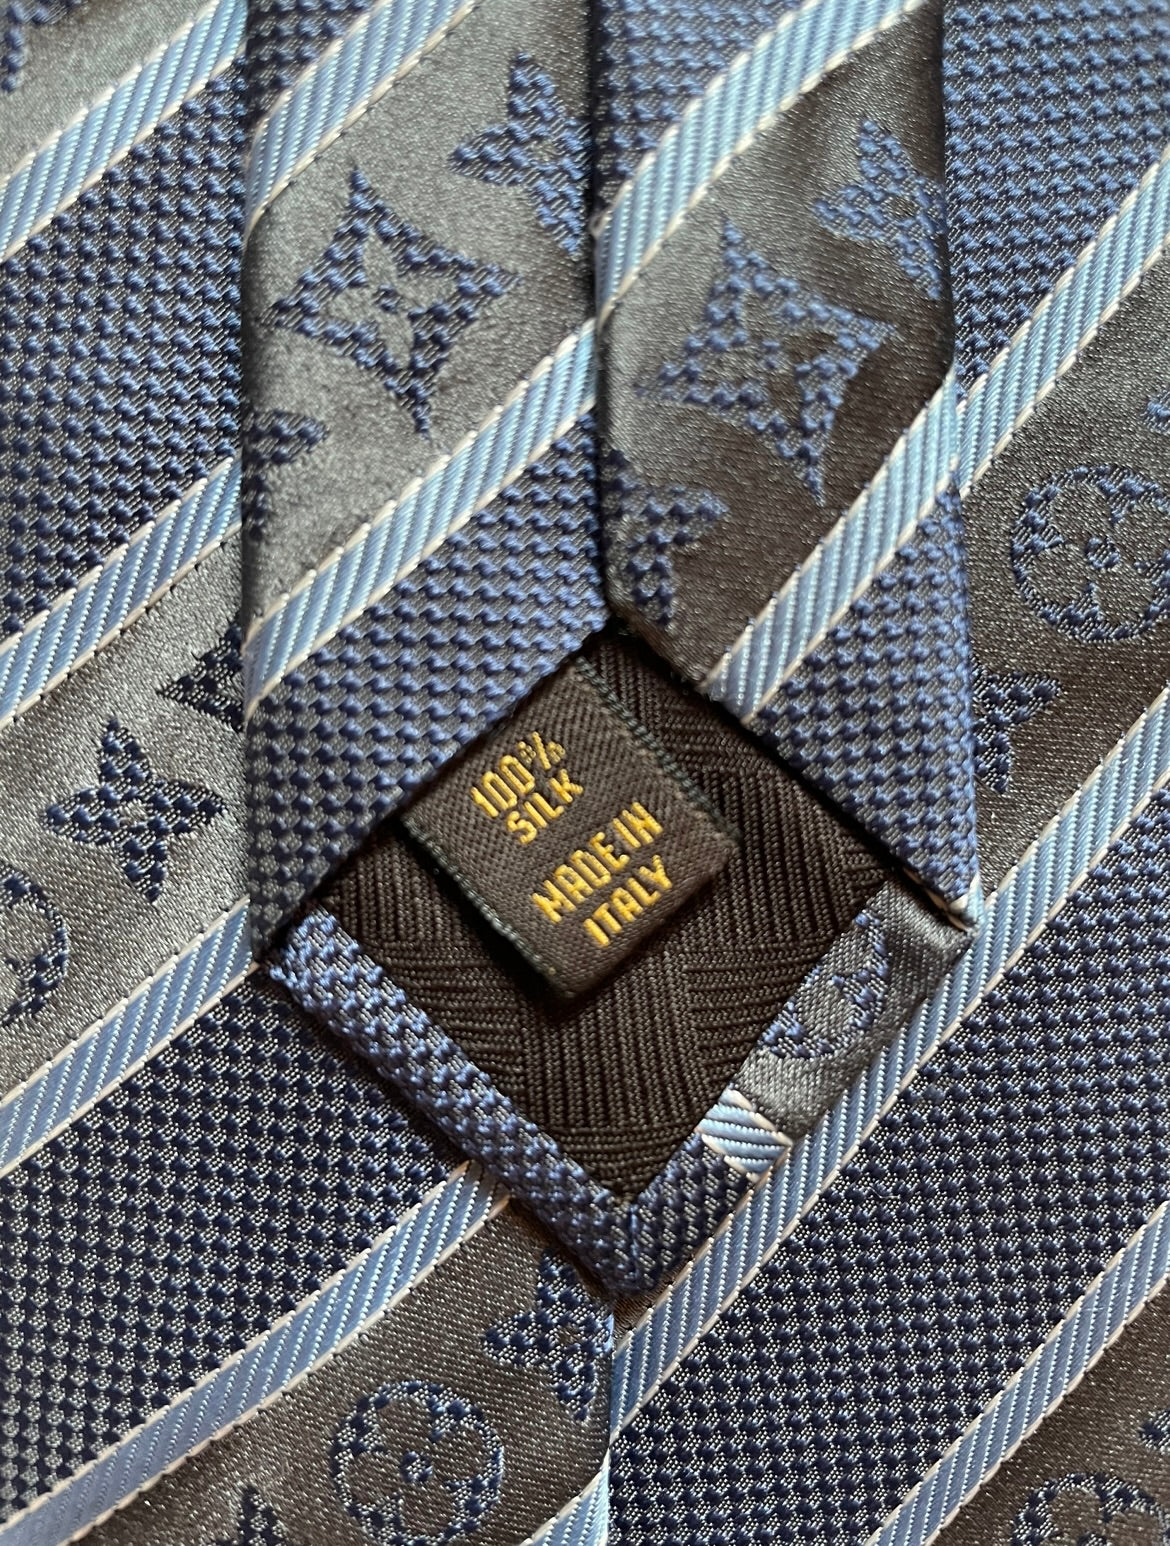 Cravate Louis Vuitton à rayures